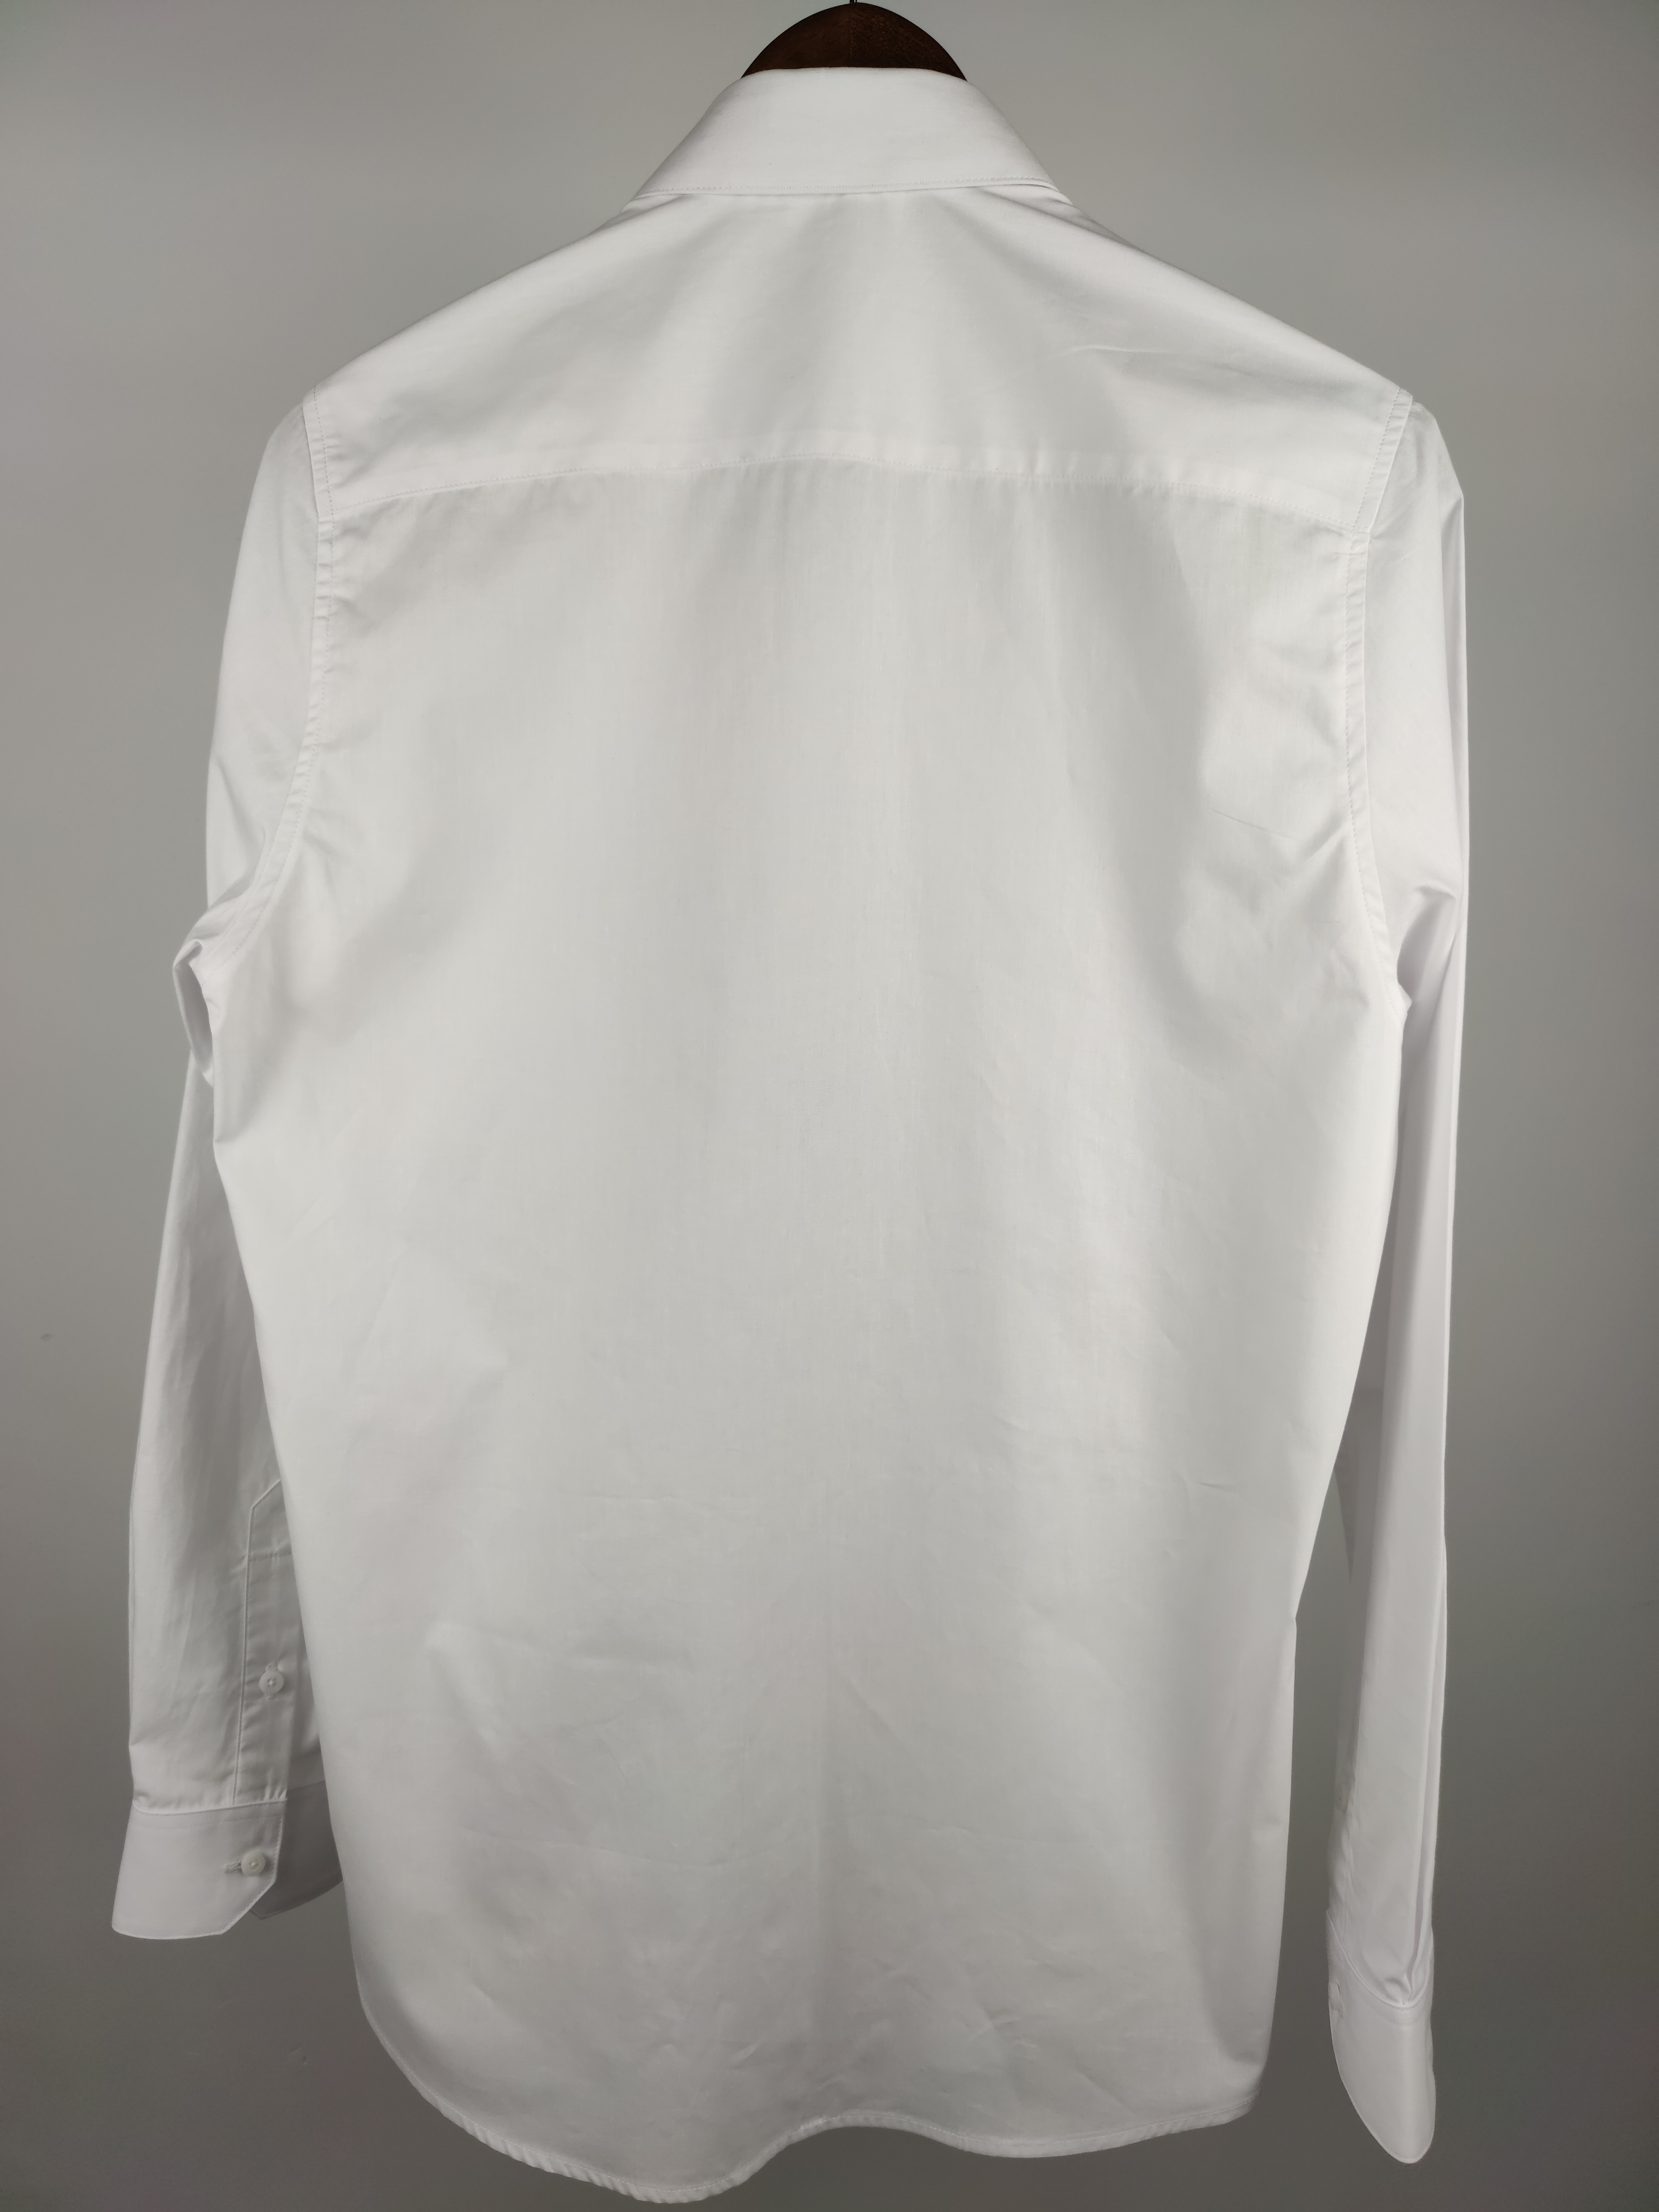 White Color Men′s Cotton Business Dress Shirt